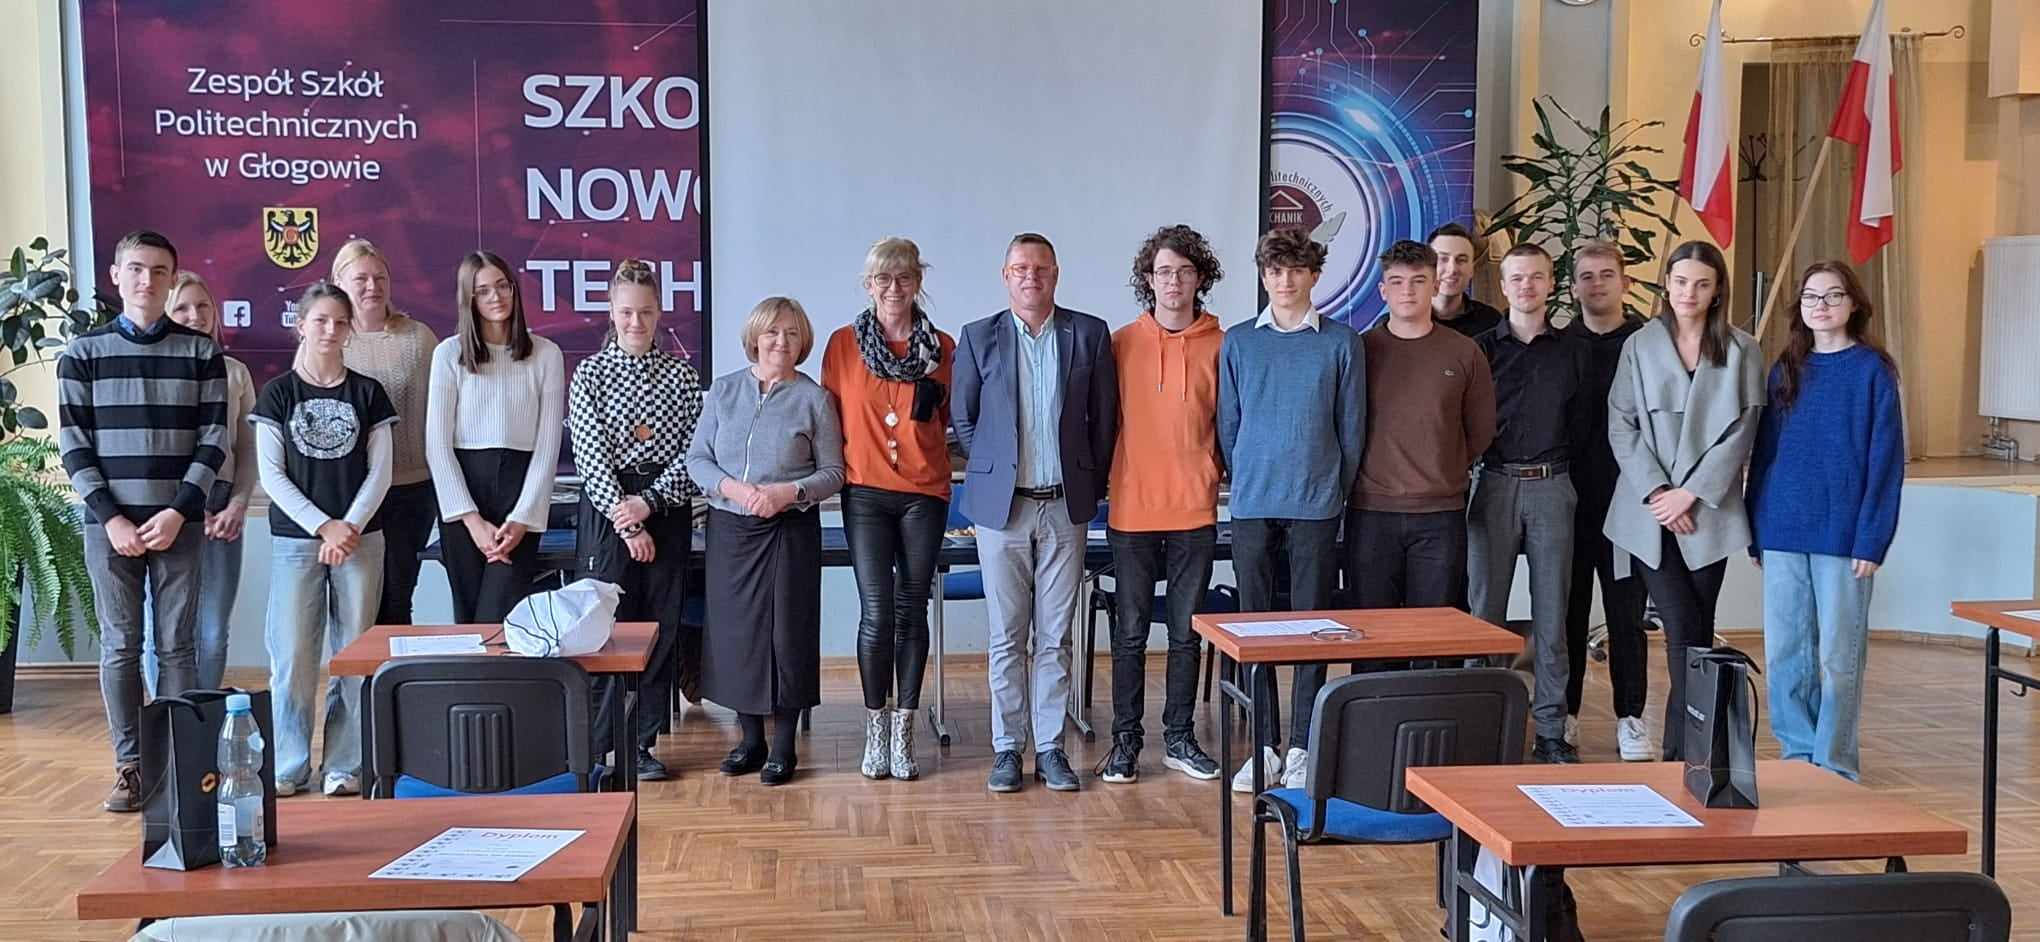 Matematyka Na Wesoło: Finał XX Konkursu Szkolnego, Zespół Szkół Politechnicznych w Głogowie